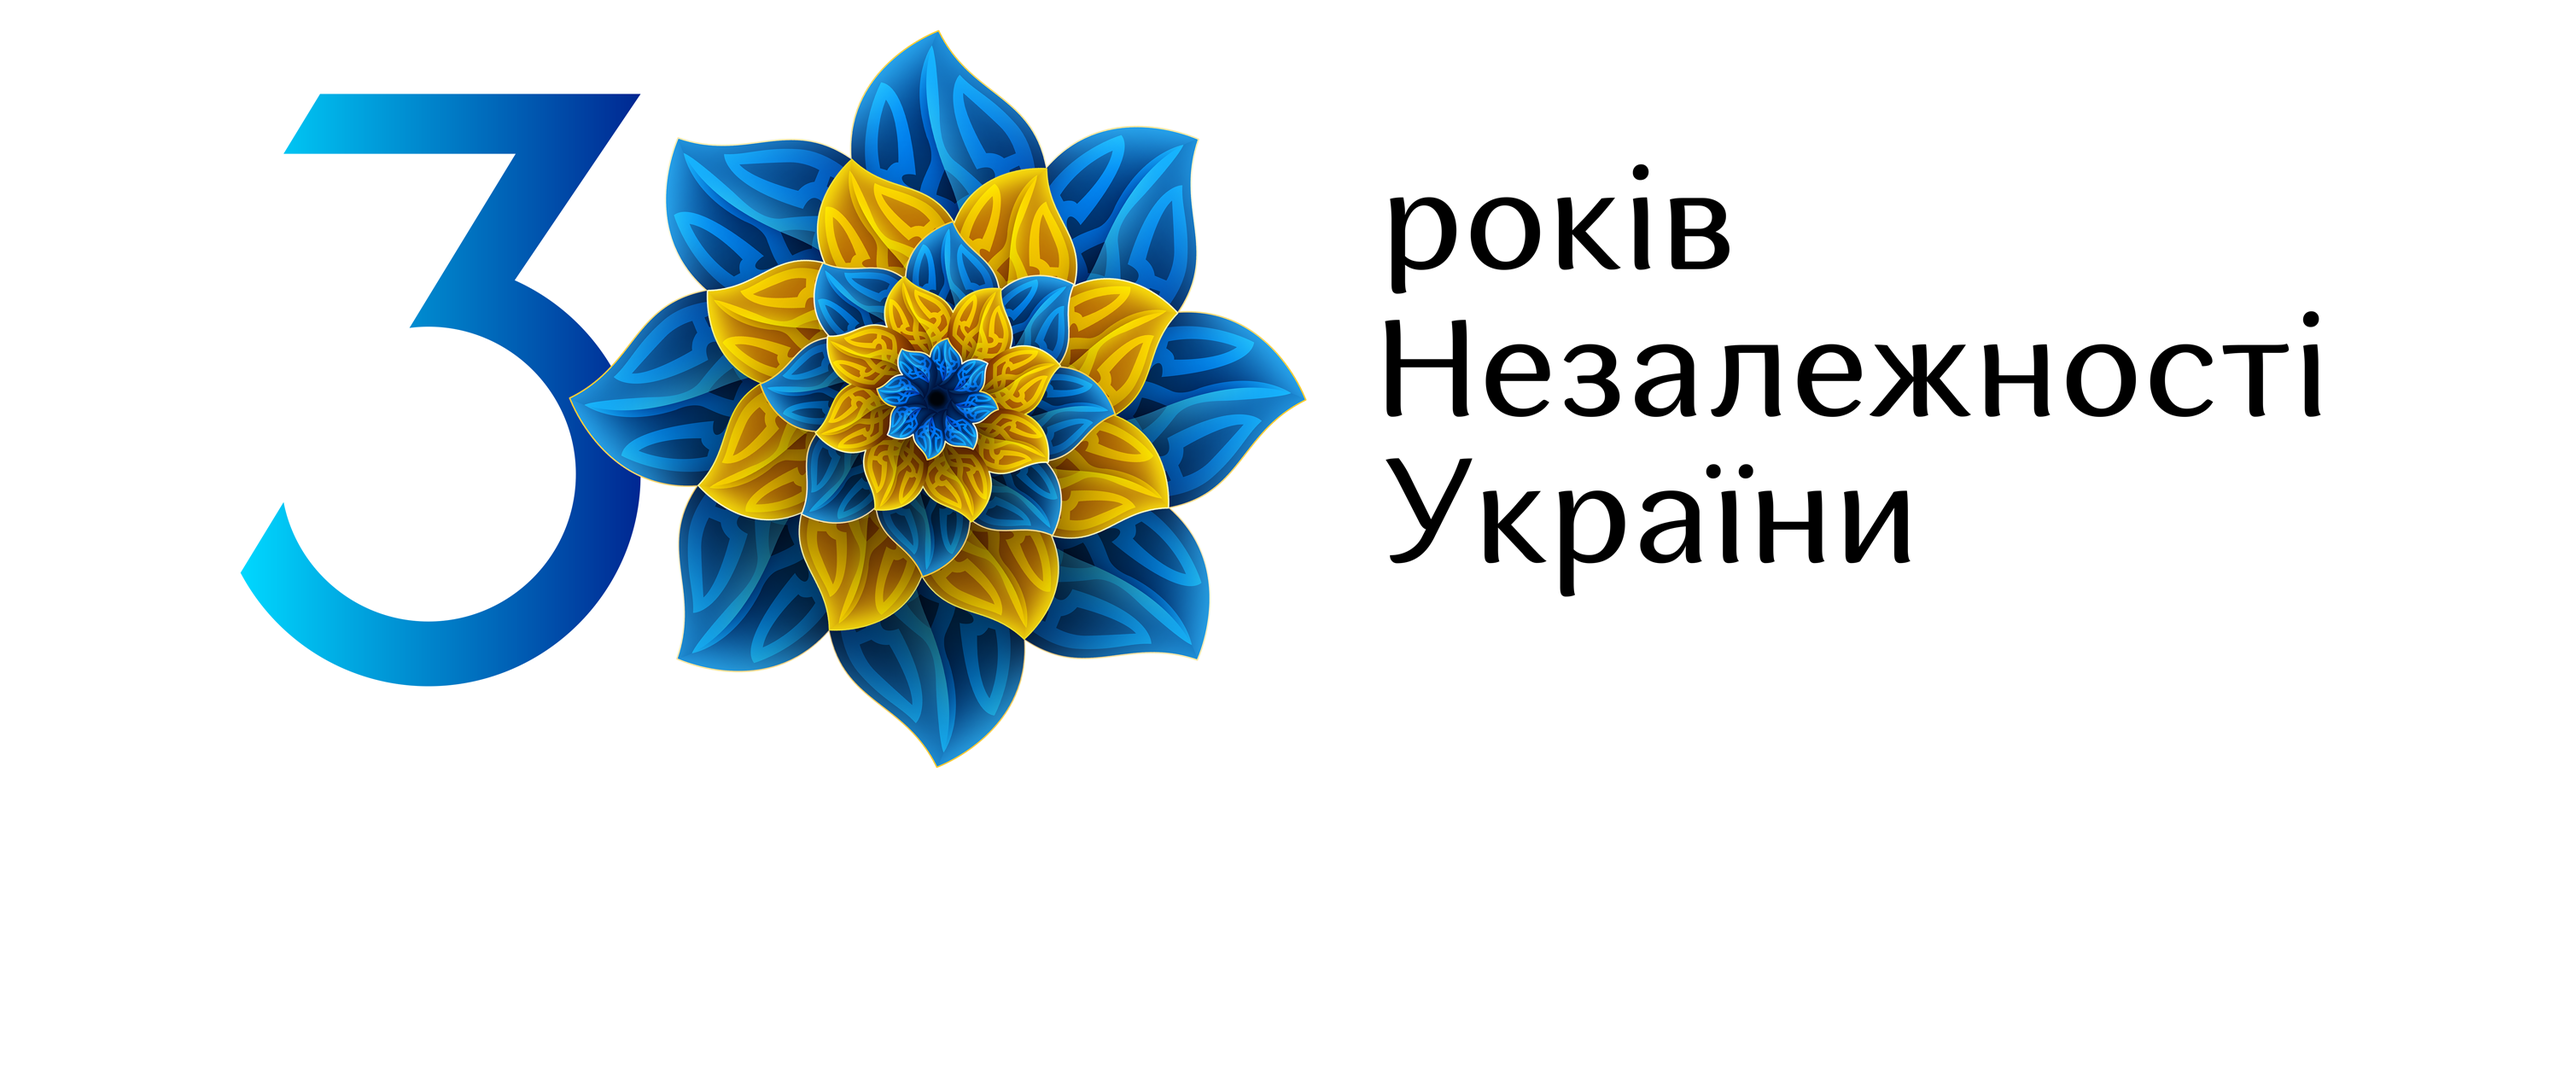 День независимости Украины 2021 – сегодня Украине 30 лет